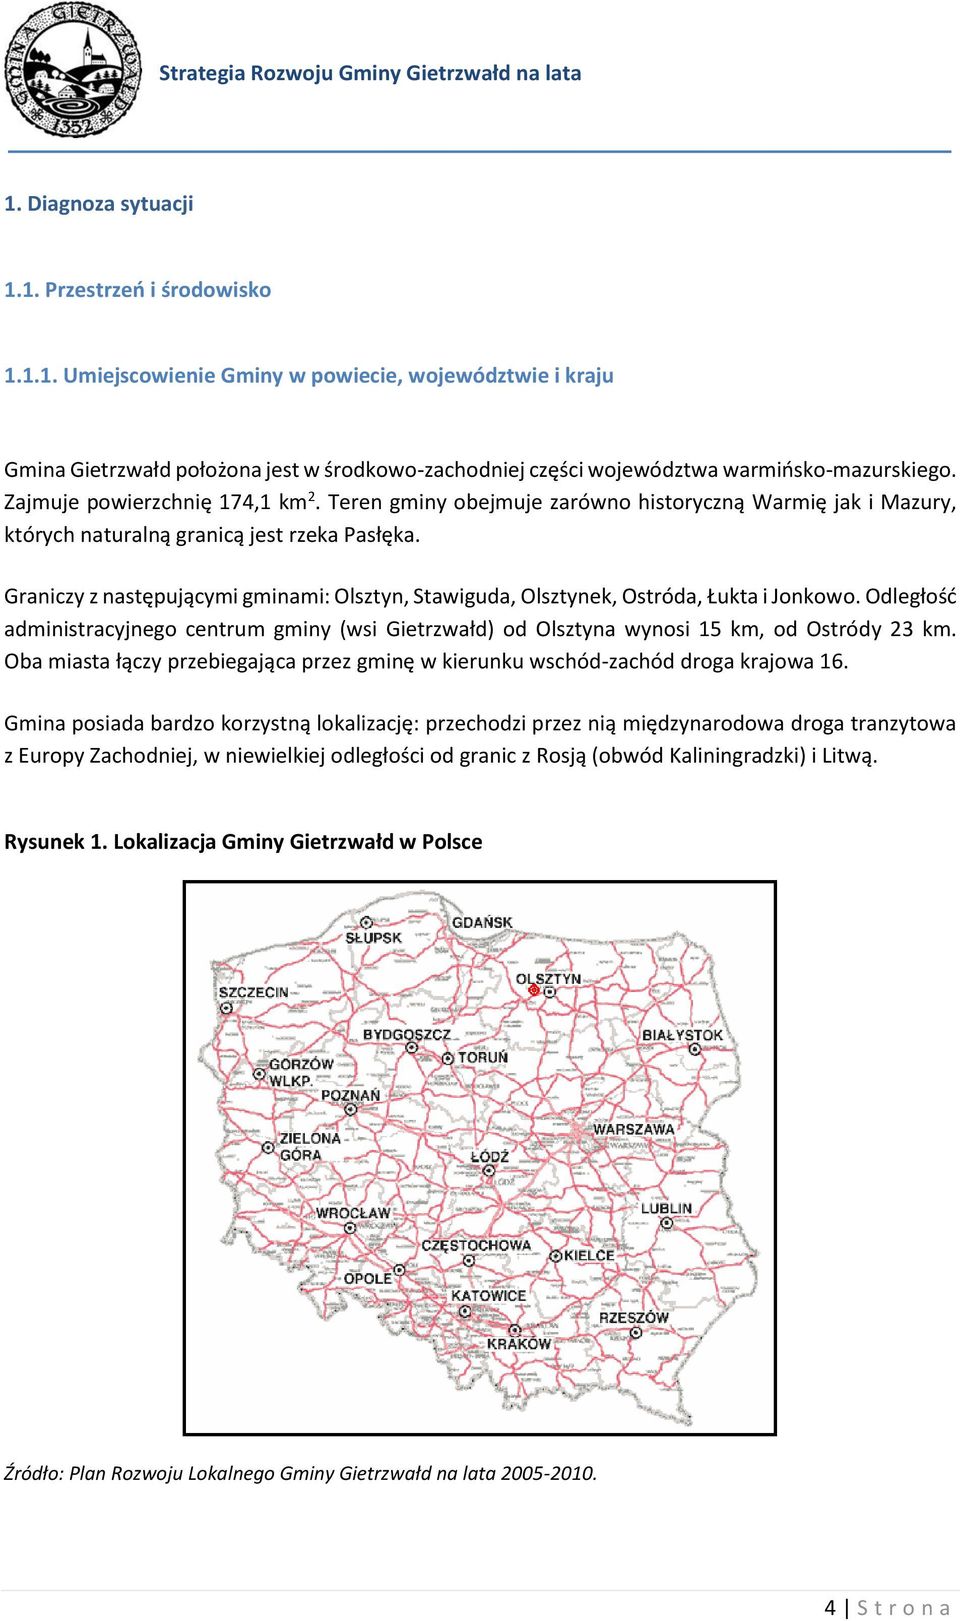 Graniczy z następującymi gminami: Olsztyn, Stawiguda, Olsztynek, Ostróda, Łukta i Jonkowo. Odległość administracyjnego centrum gminy (wsi Gietrzwałd) od Olsztyna wynosi 15 km, od Ostródy 23 km.